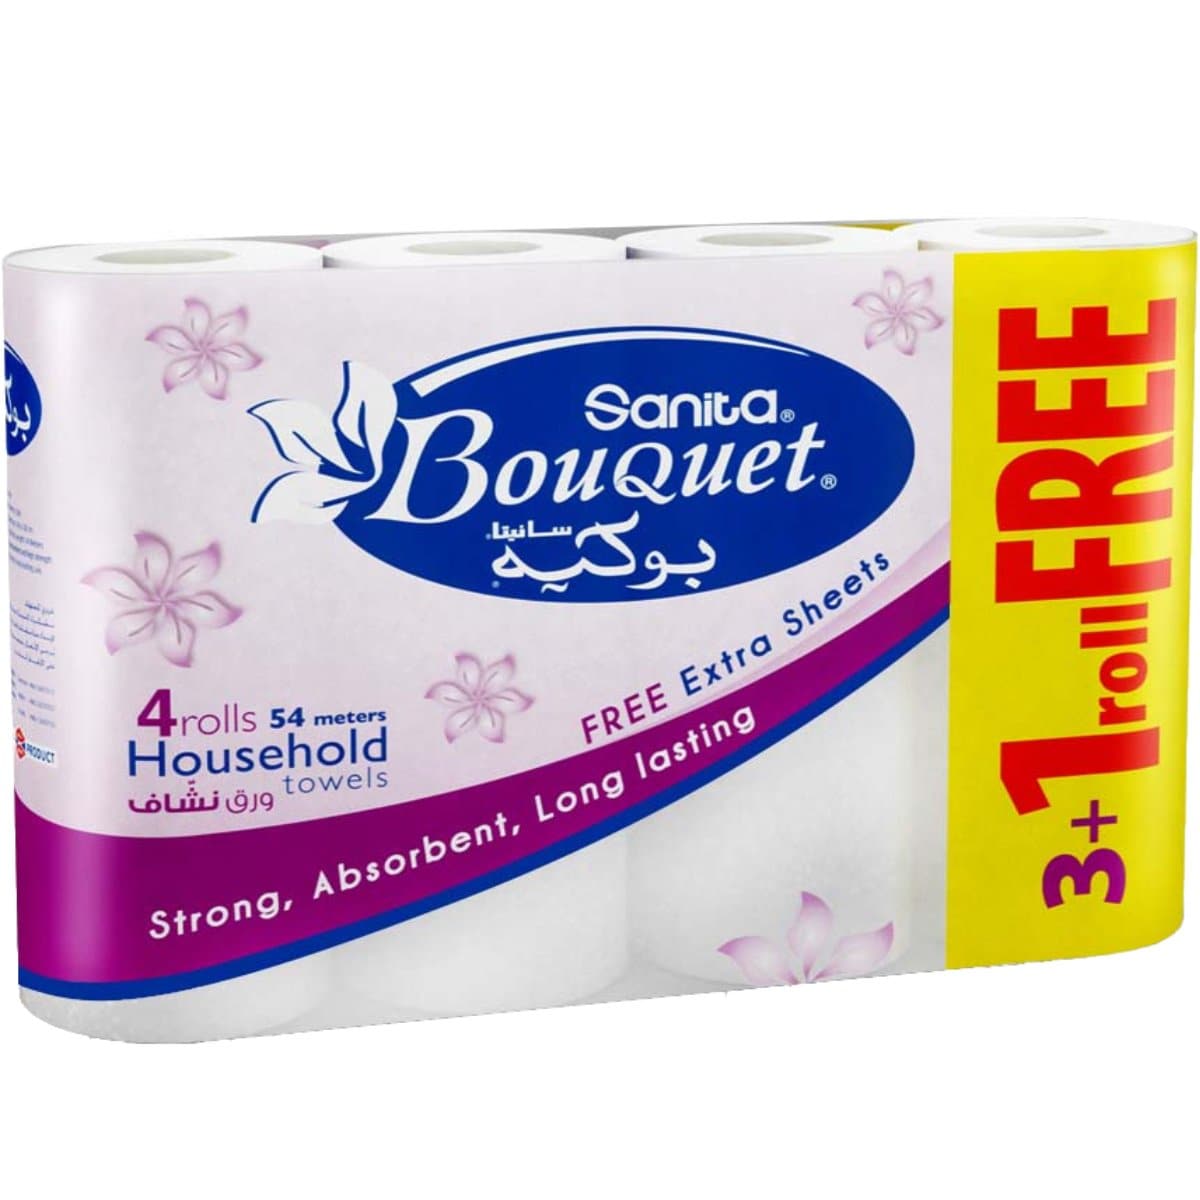 Sanita Bouquet Kitchen Rolls, 2 ply, 3+1/pack